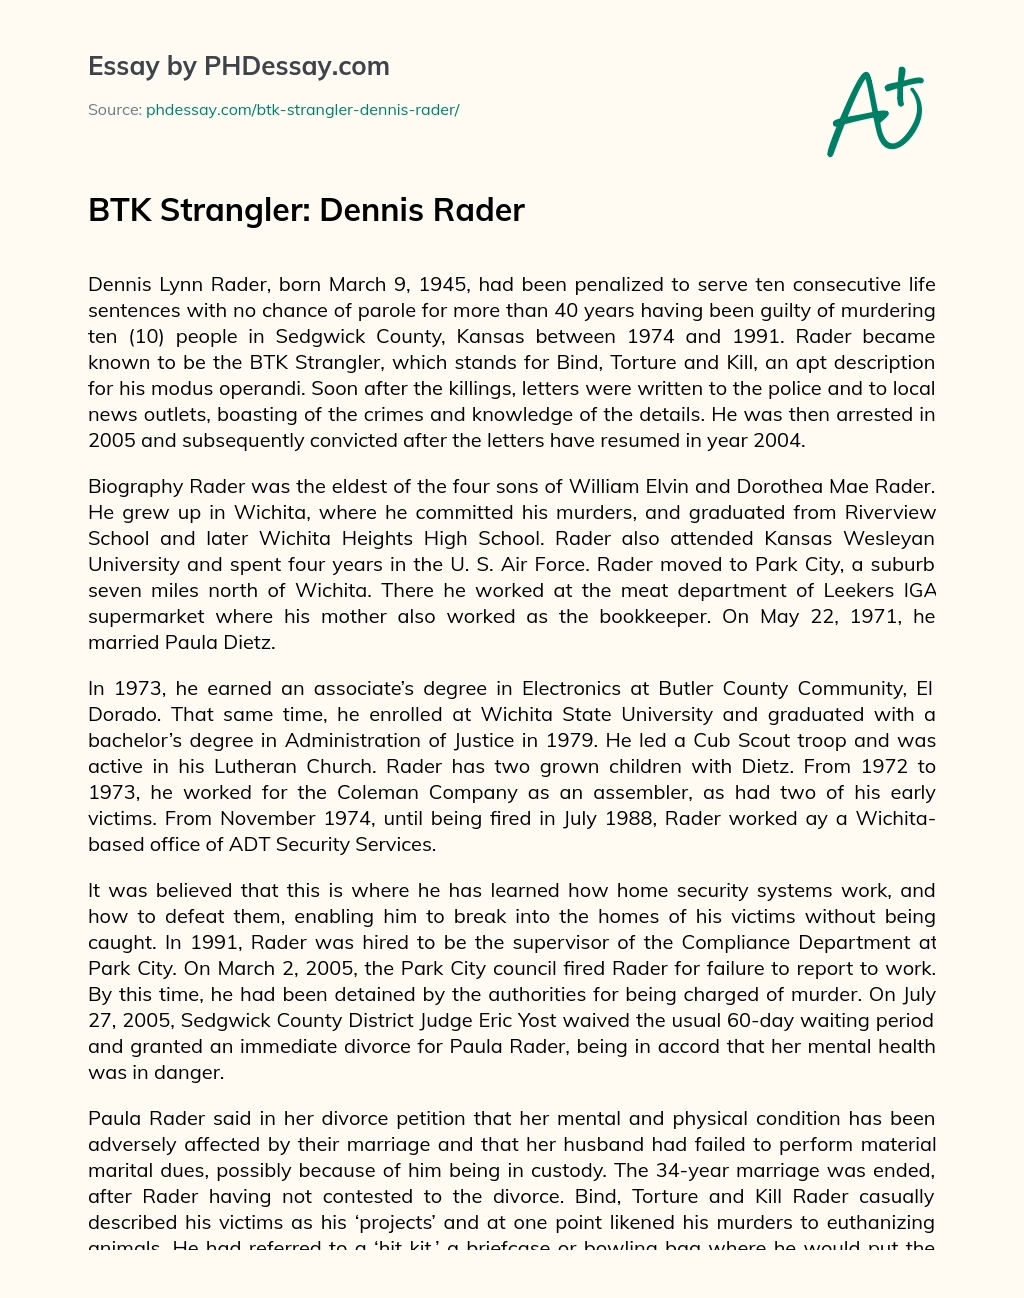 BTK Strangler: Dennis Rader essay